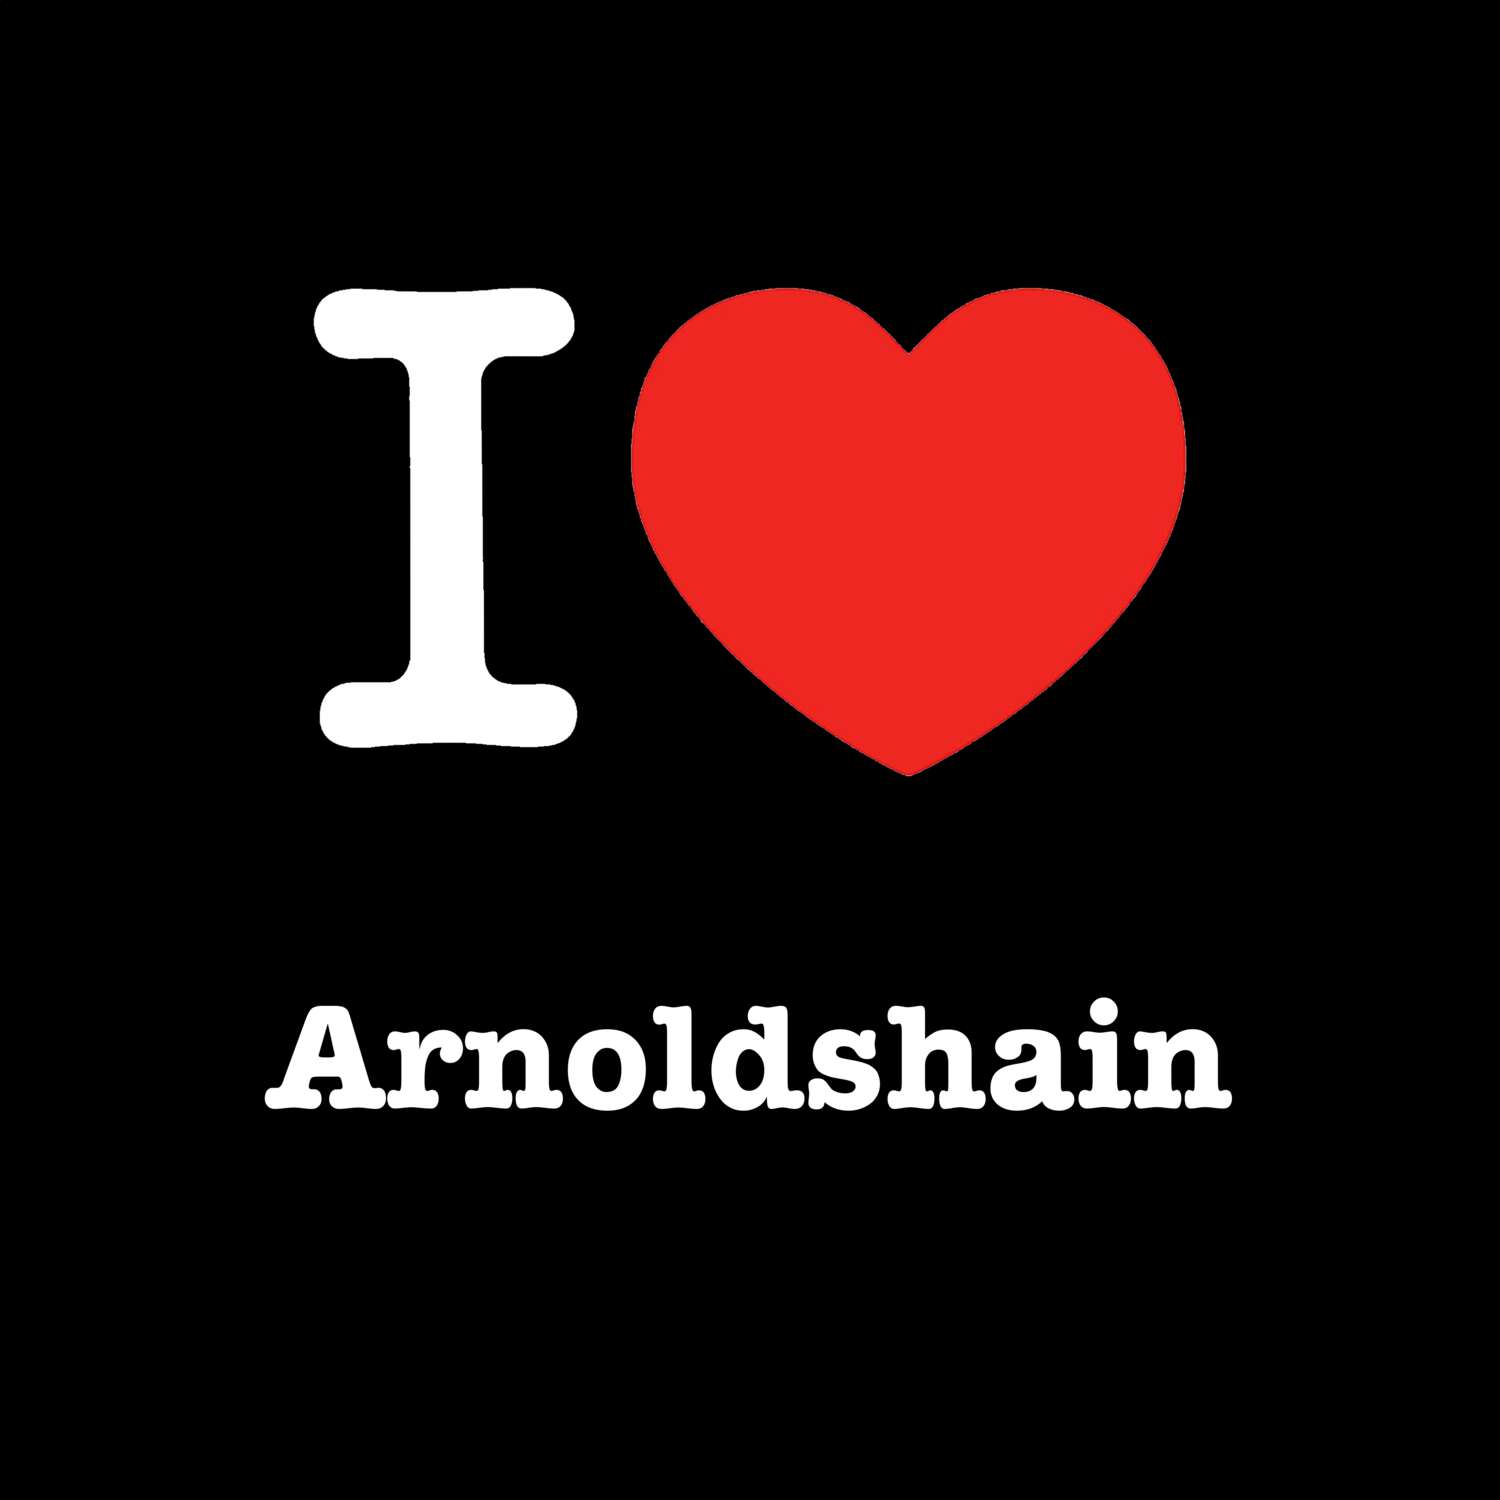 Arnoldshain T-Shirt »I love«